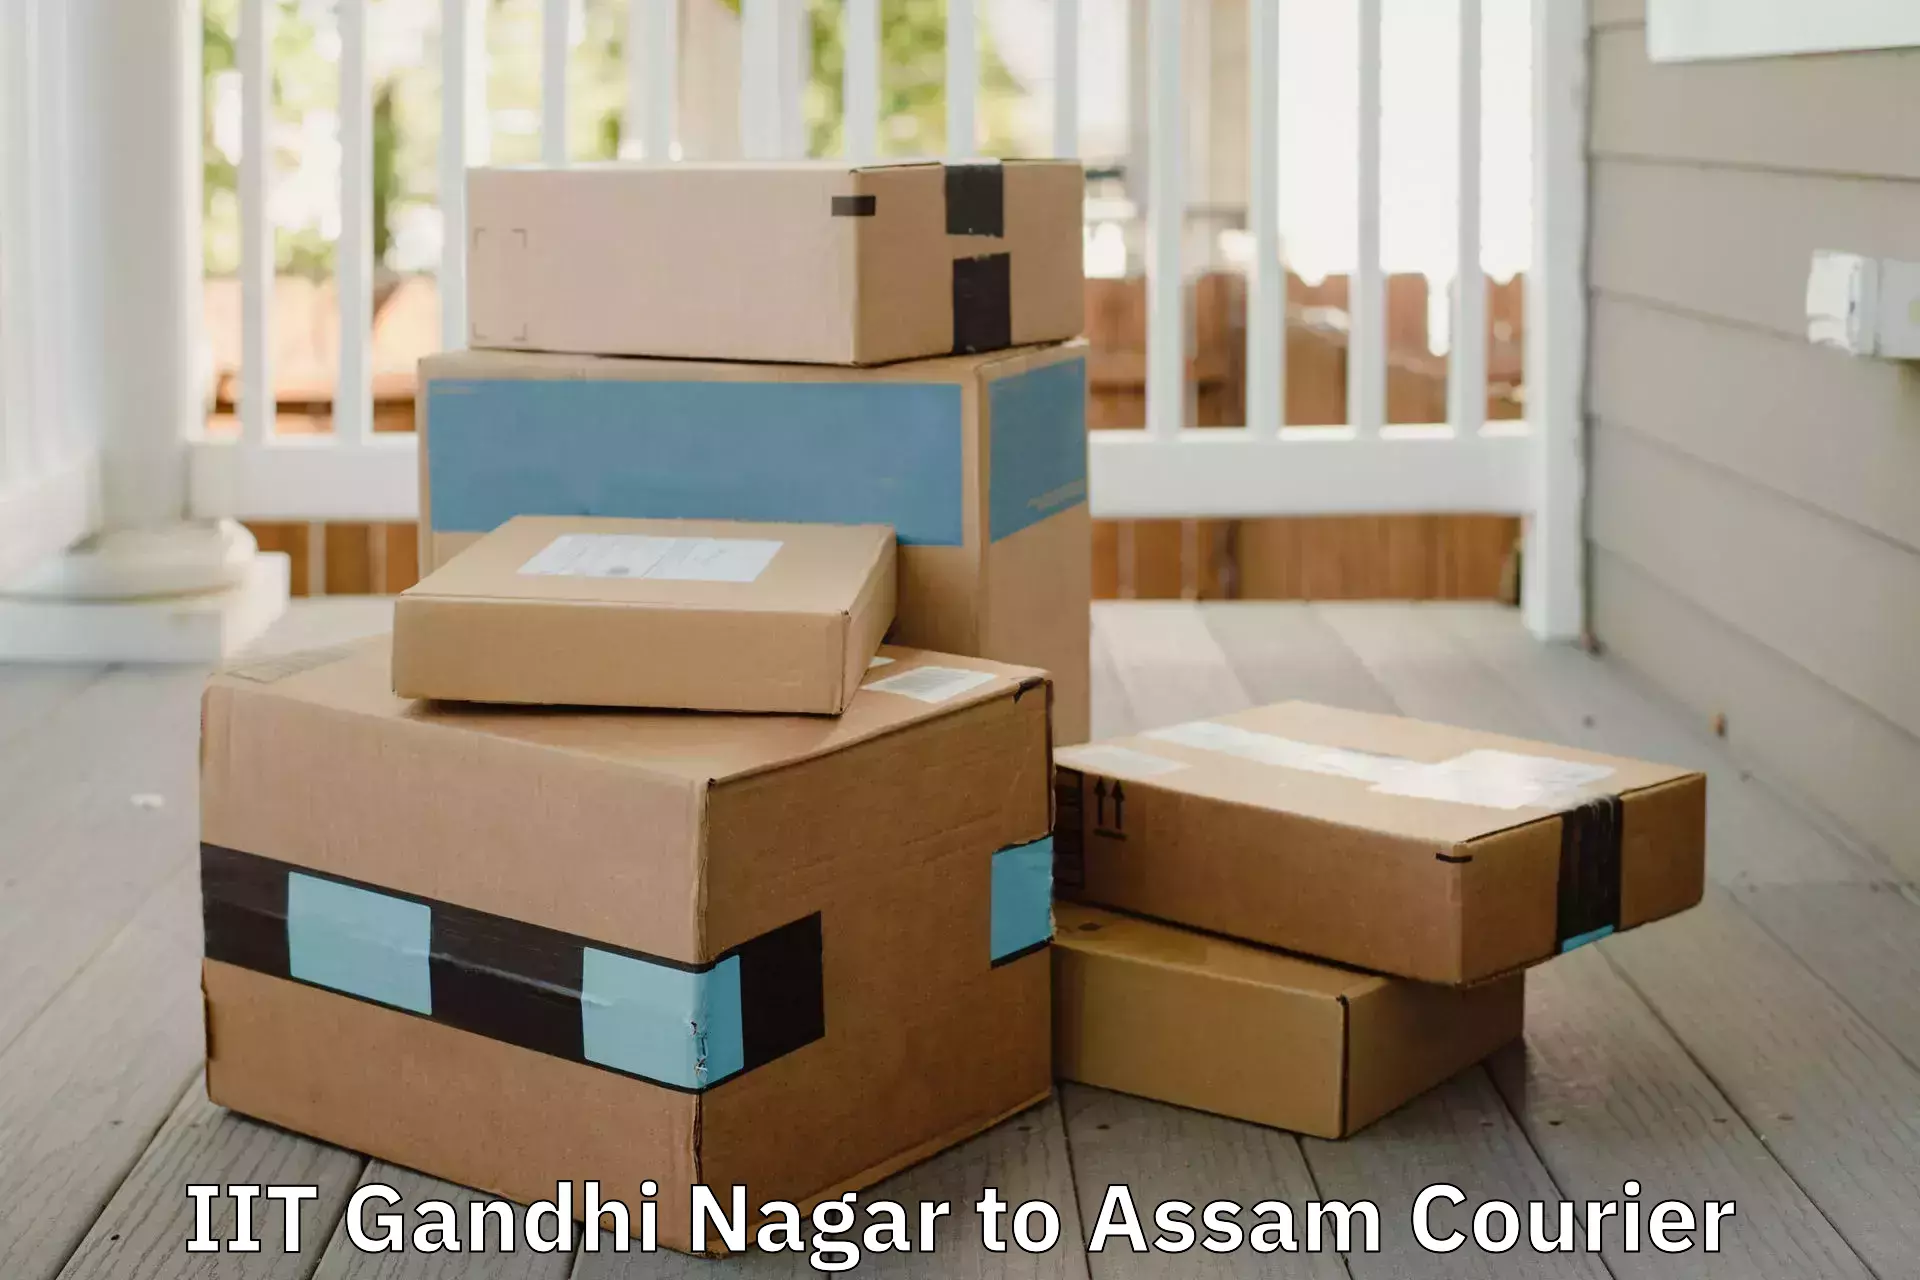 Premium furniture transport IIT Gandhi Nagar to Amoni